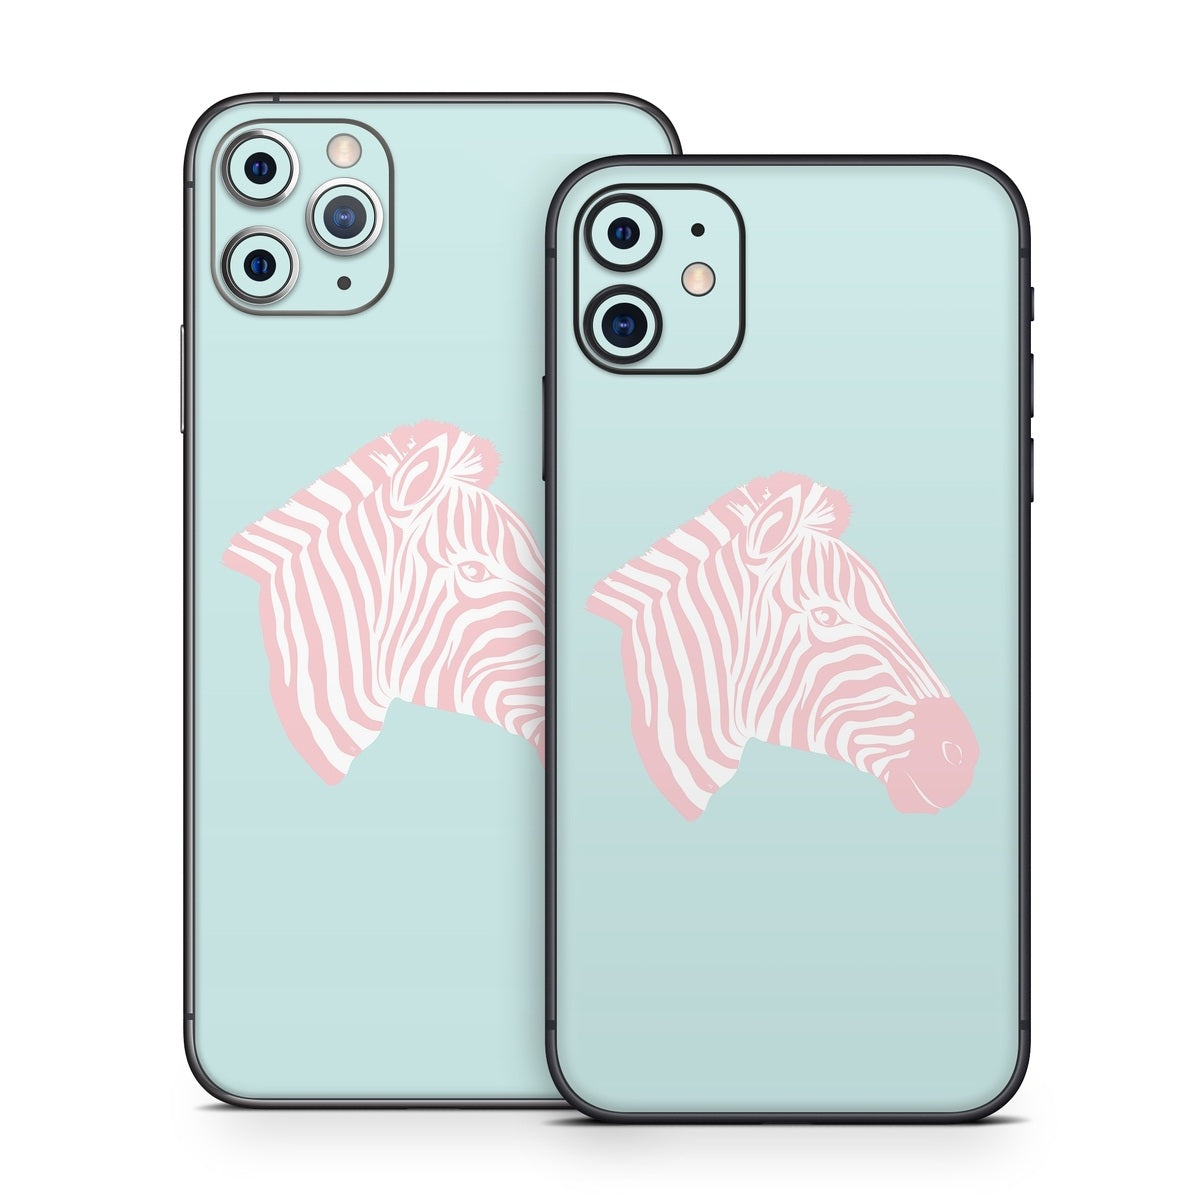 Sweet Zebra - Apple iPhone 11 Skin